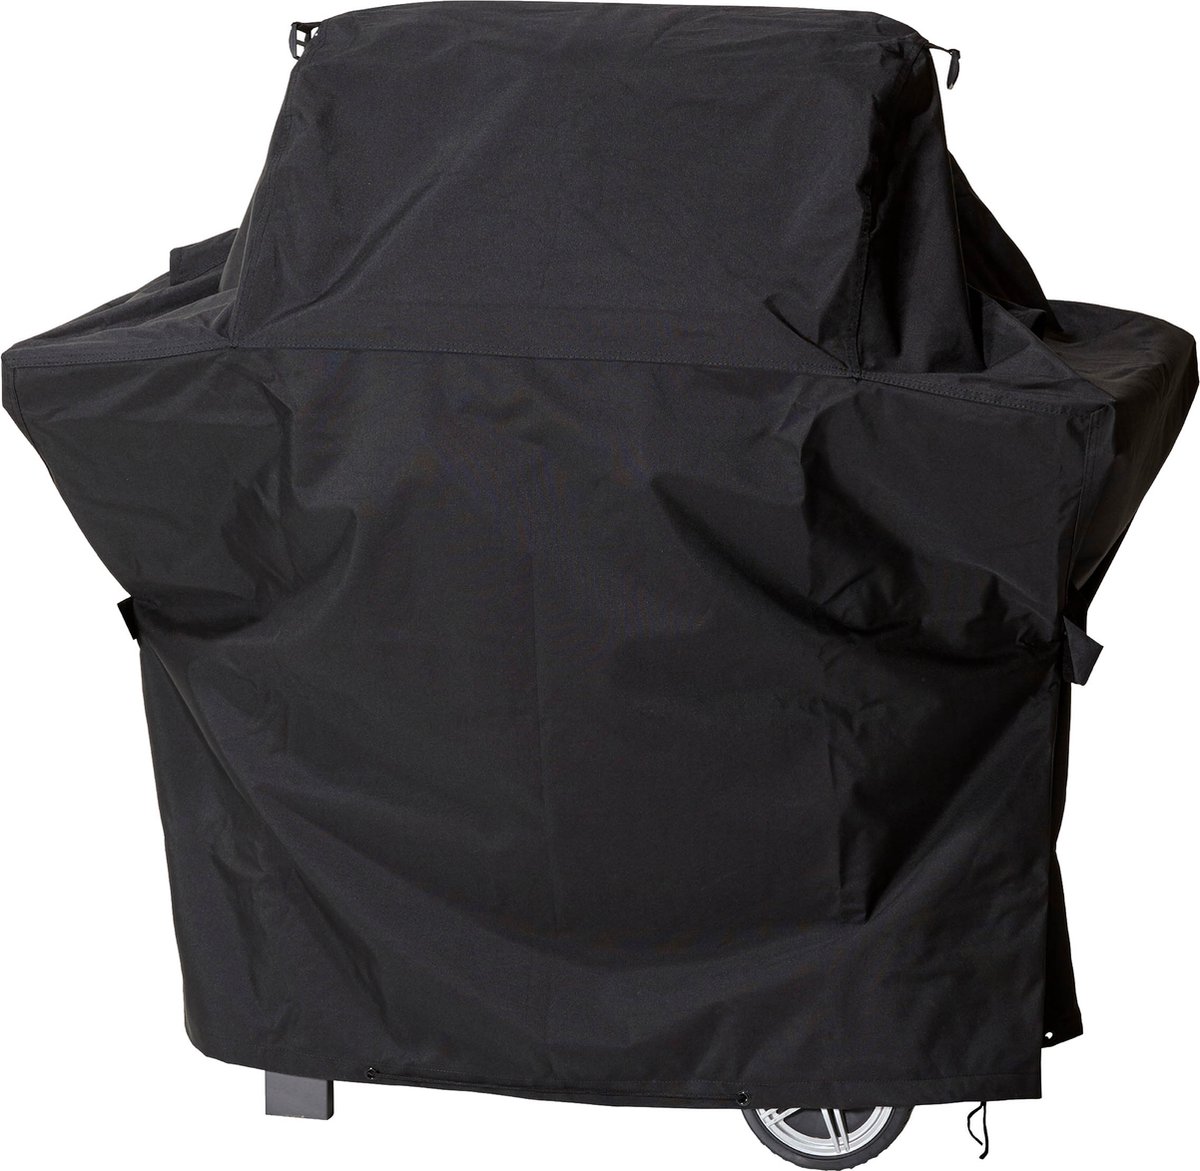 Beschermhoes voor gasbarbecue trapeziumvormig | 137 x 62 x 117 cm | polyesterweefsel van het type Oxford 600D, kleur: zwart.